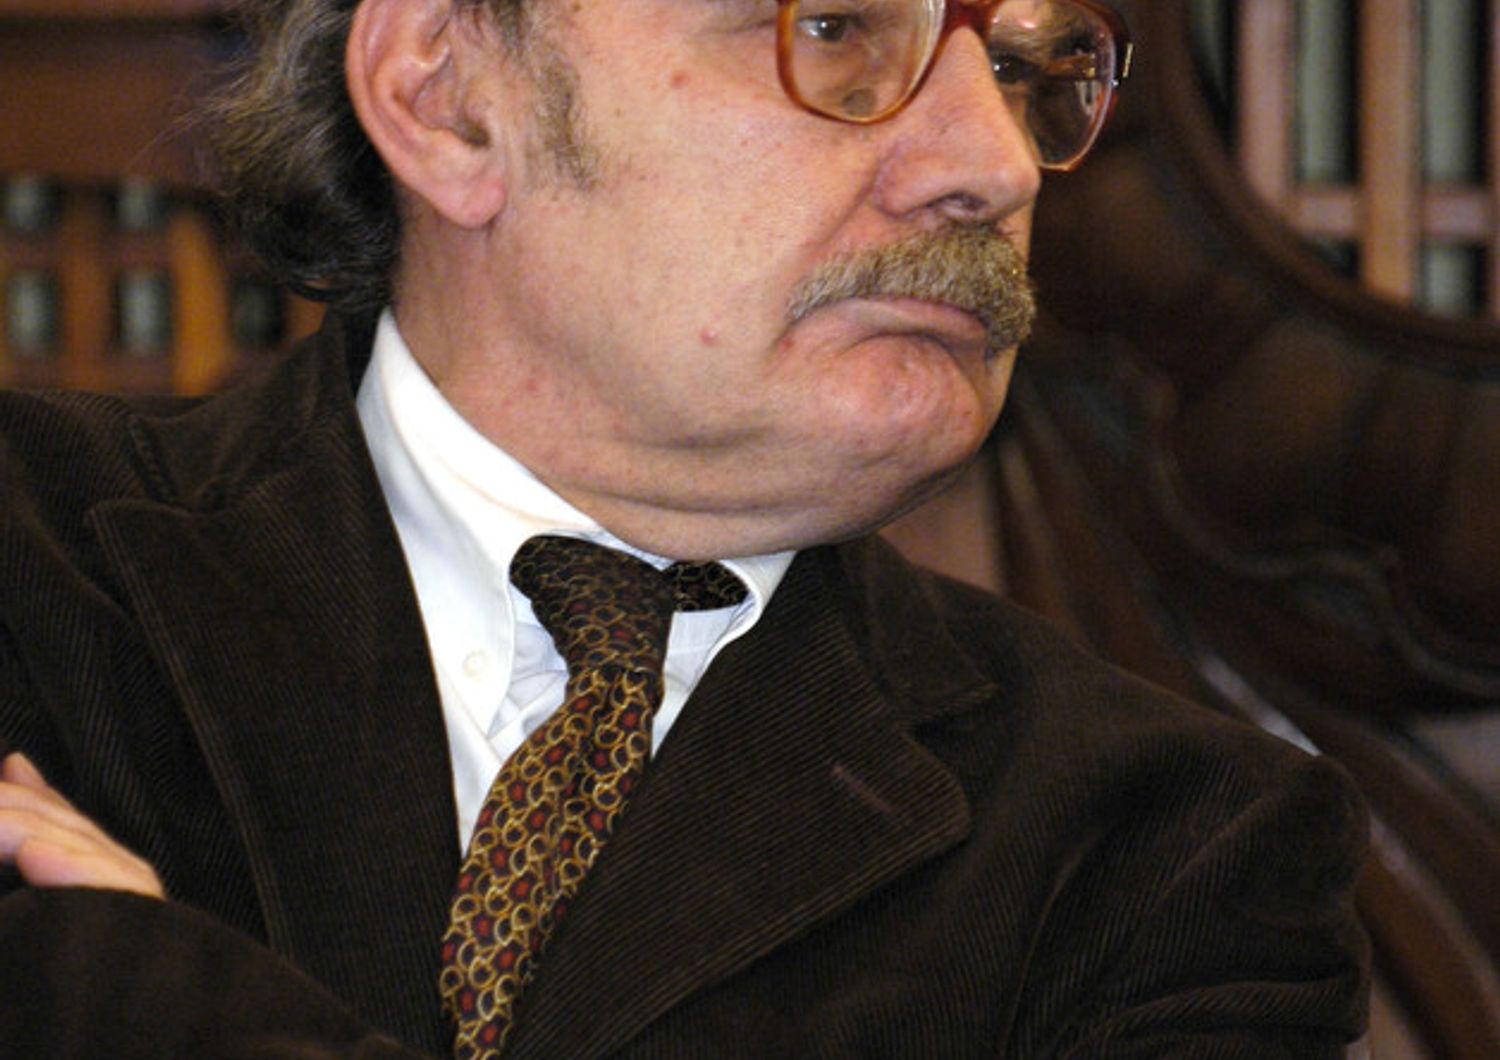 Luciano Pellicani